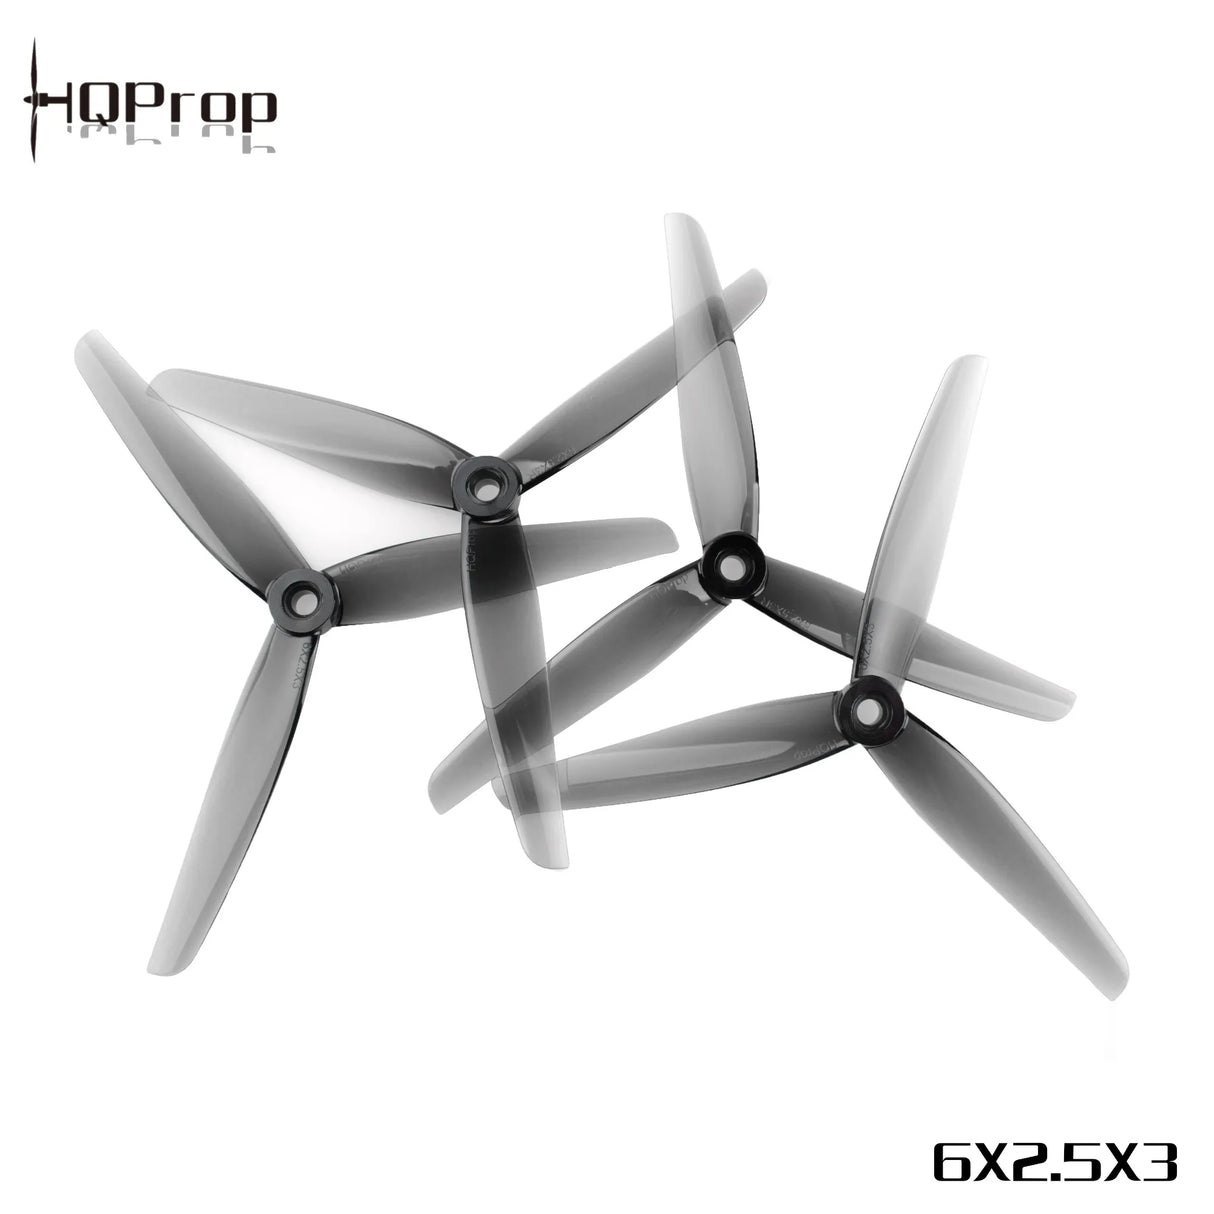 HQProp 6X2.5X3 Propellers - DroneDynamics.ca